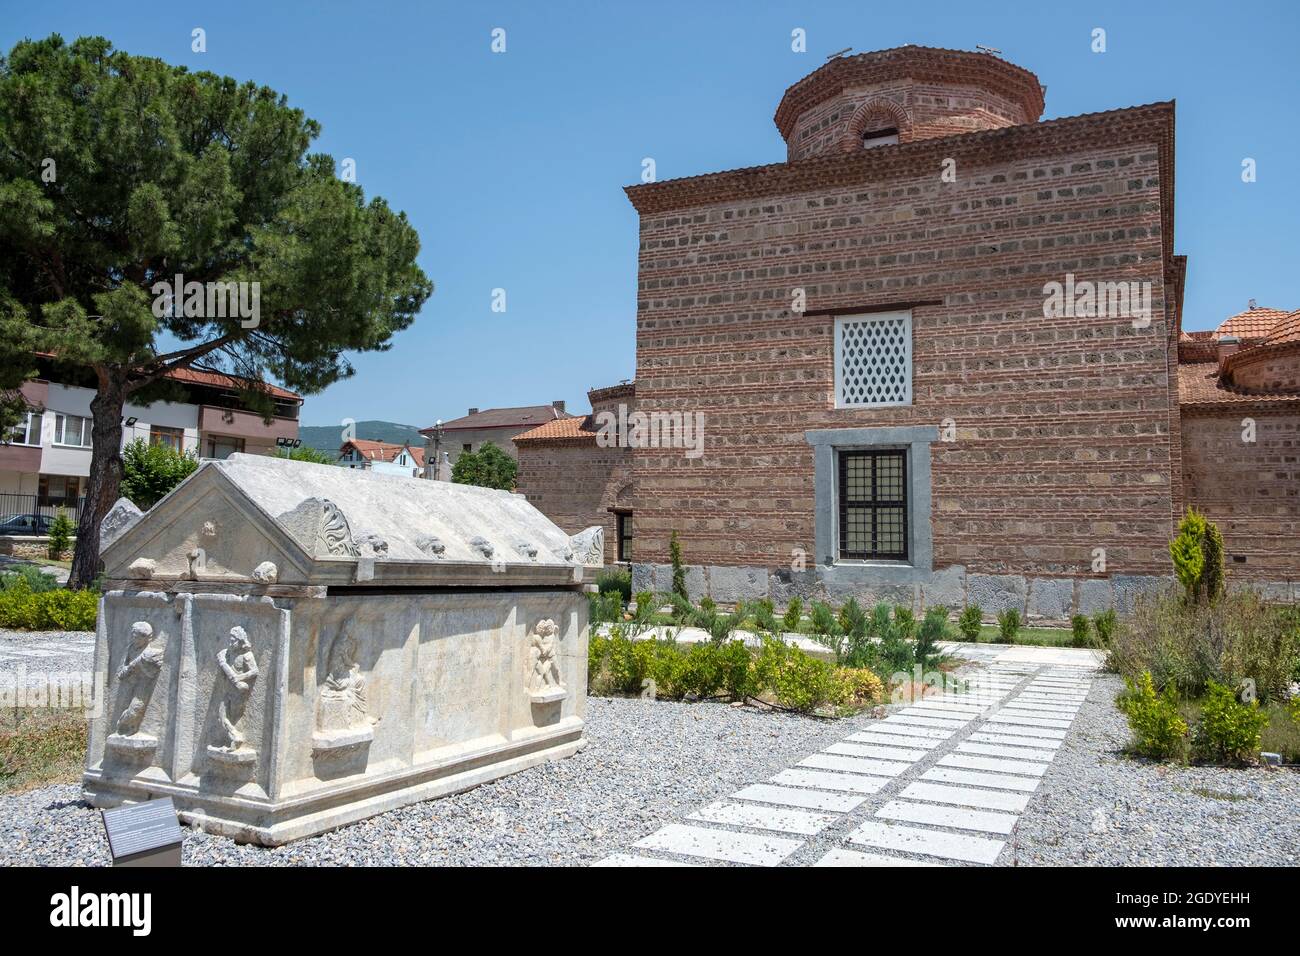 İznik ist eine so historische und alte Stadt, dass man es als ein Freilichtmuseum bezeichnen kann. Besuchsdatum 01. Juli 2021 Stockfoto